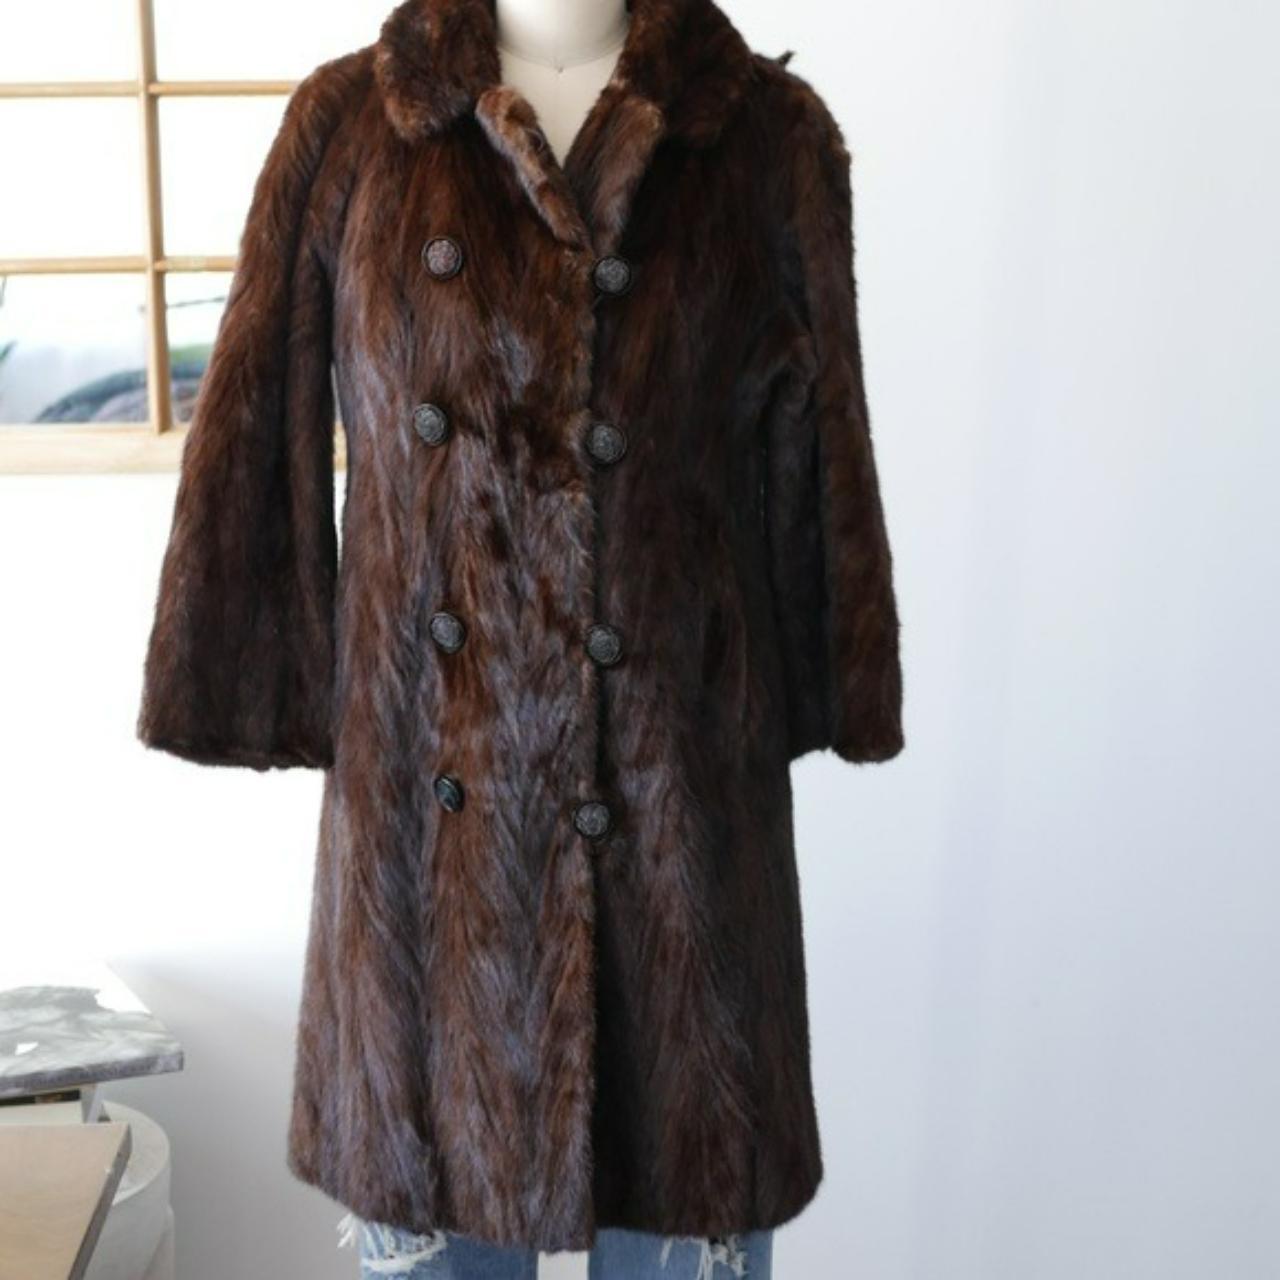 Genuine Fur Coat Jacket Vintage Brown Multi Double... - Depop